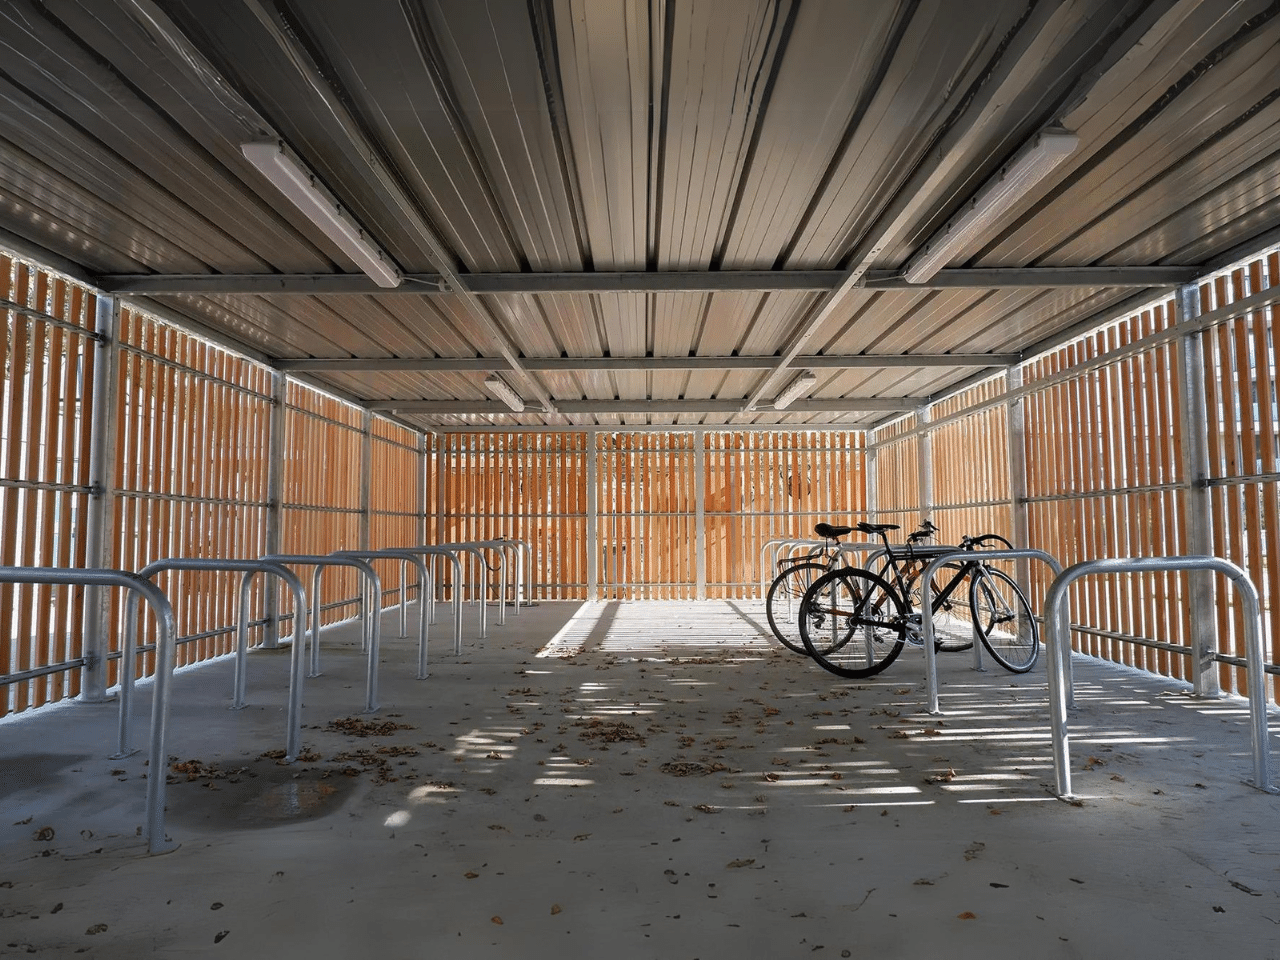 Intérieur d'un abri refuge ByCommute en bois avec structure en acier galvanisé, équipé de racks à vélos sécurisés. Idéal pour le stationnement de vélos dans les entreprises et collectivités, offrant un espace abrité et sécurisé.